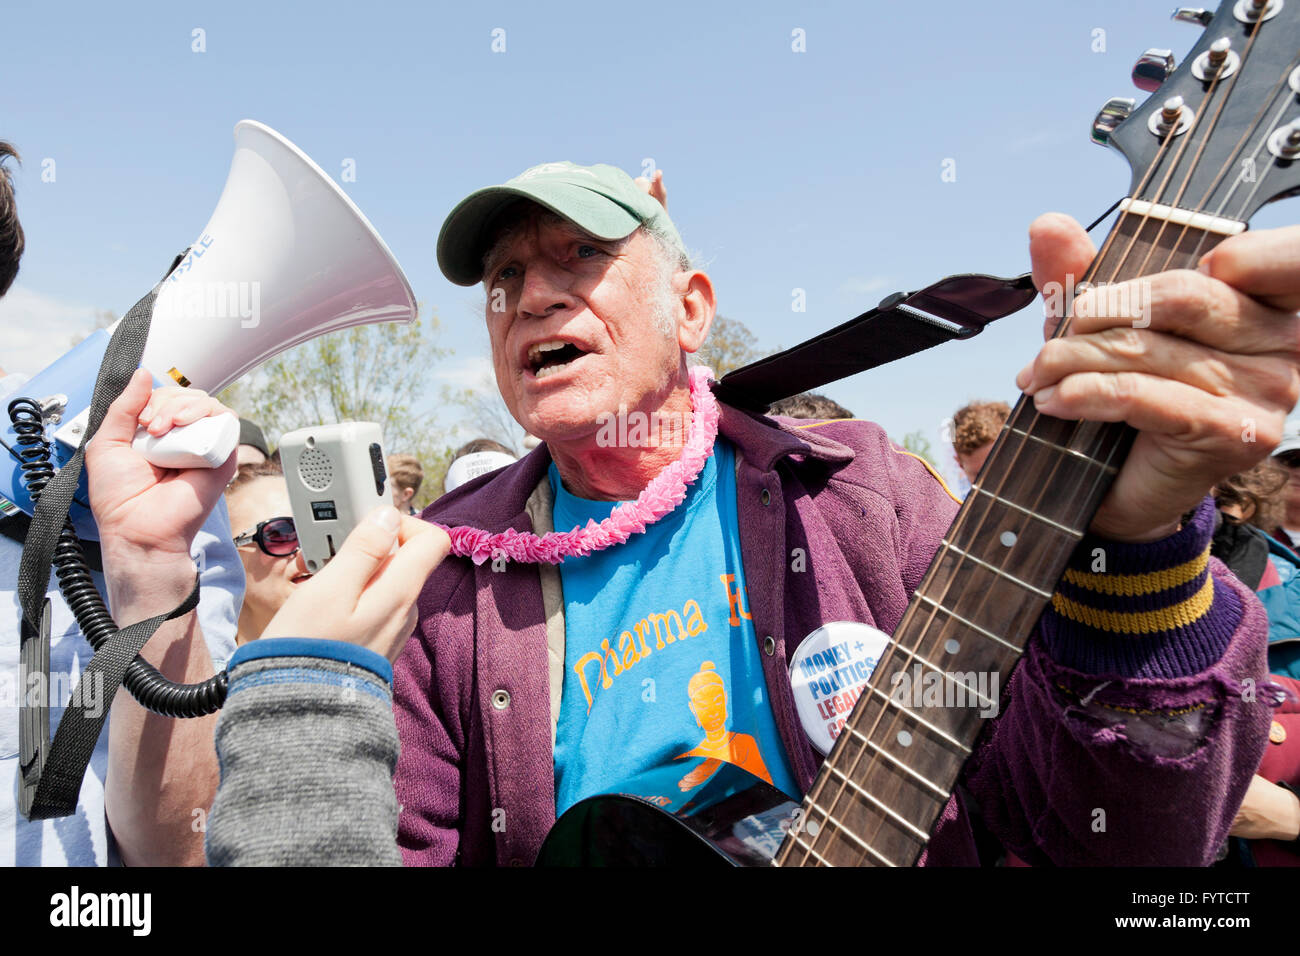 Chanter des chansons folk protestataire au rassemblement politique - Washington, DC USA Banque D'Images